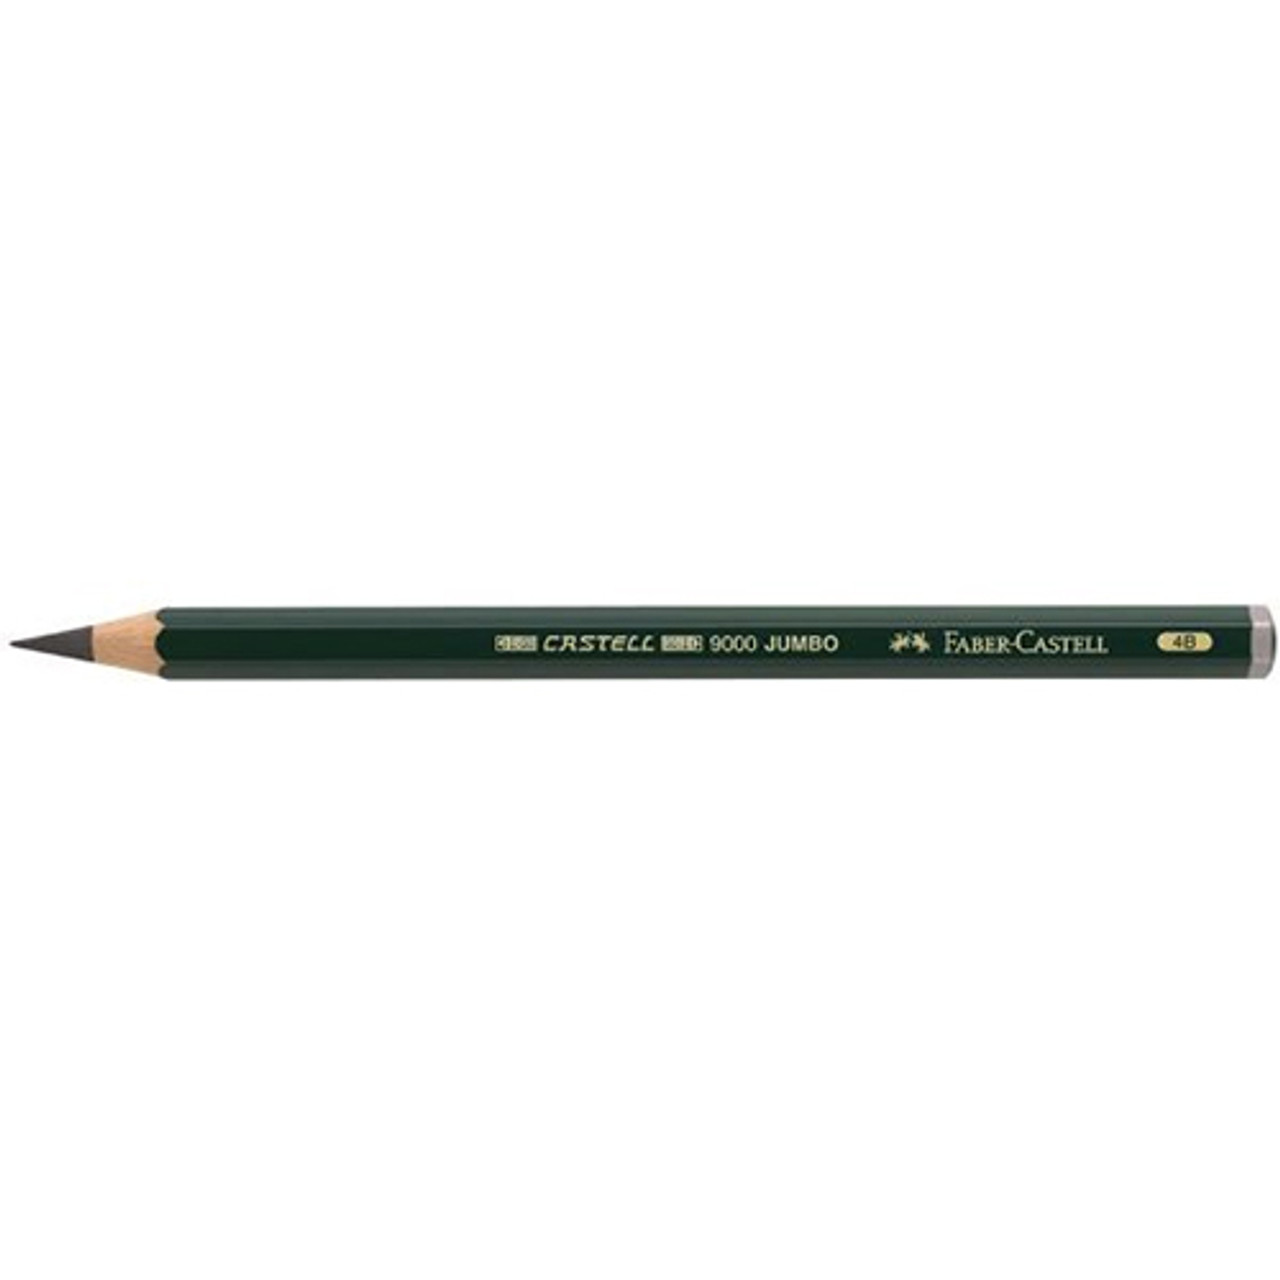 Alvin Graphite Pencils